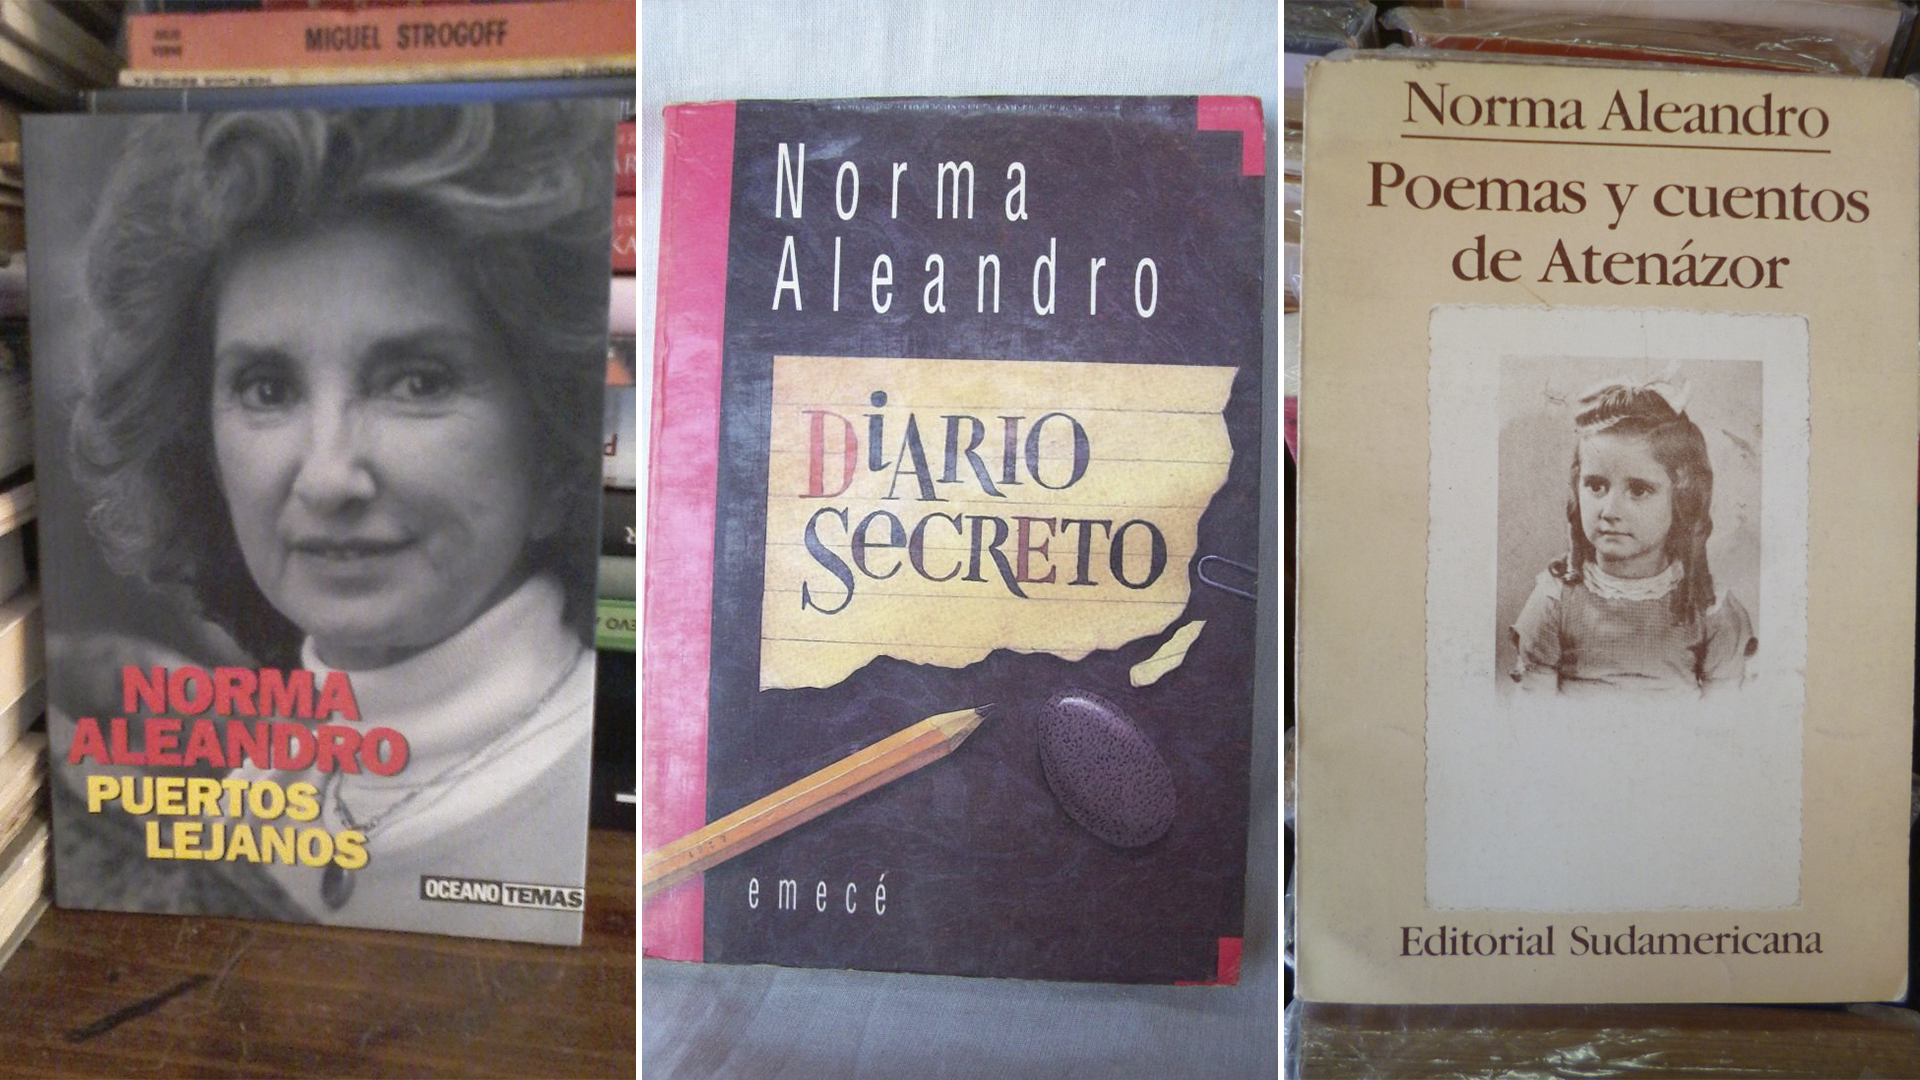 Norma Aleandro da vida a sus cuentos online: “Escribir hace tanto bien; no importa si uno publica o no, si es bueno o malo” - Infobae